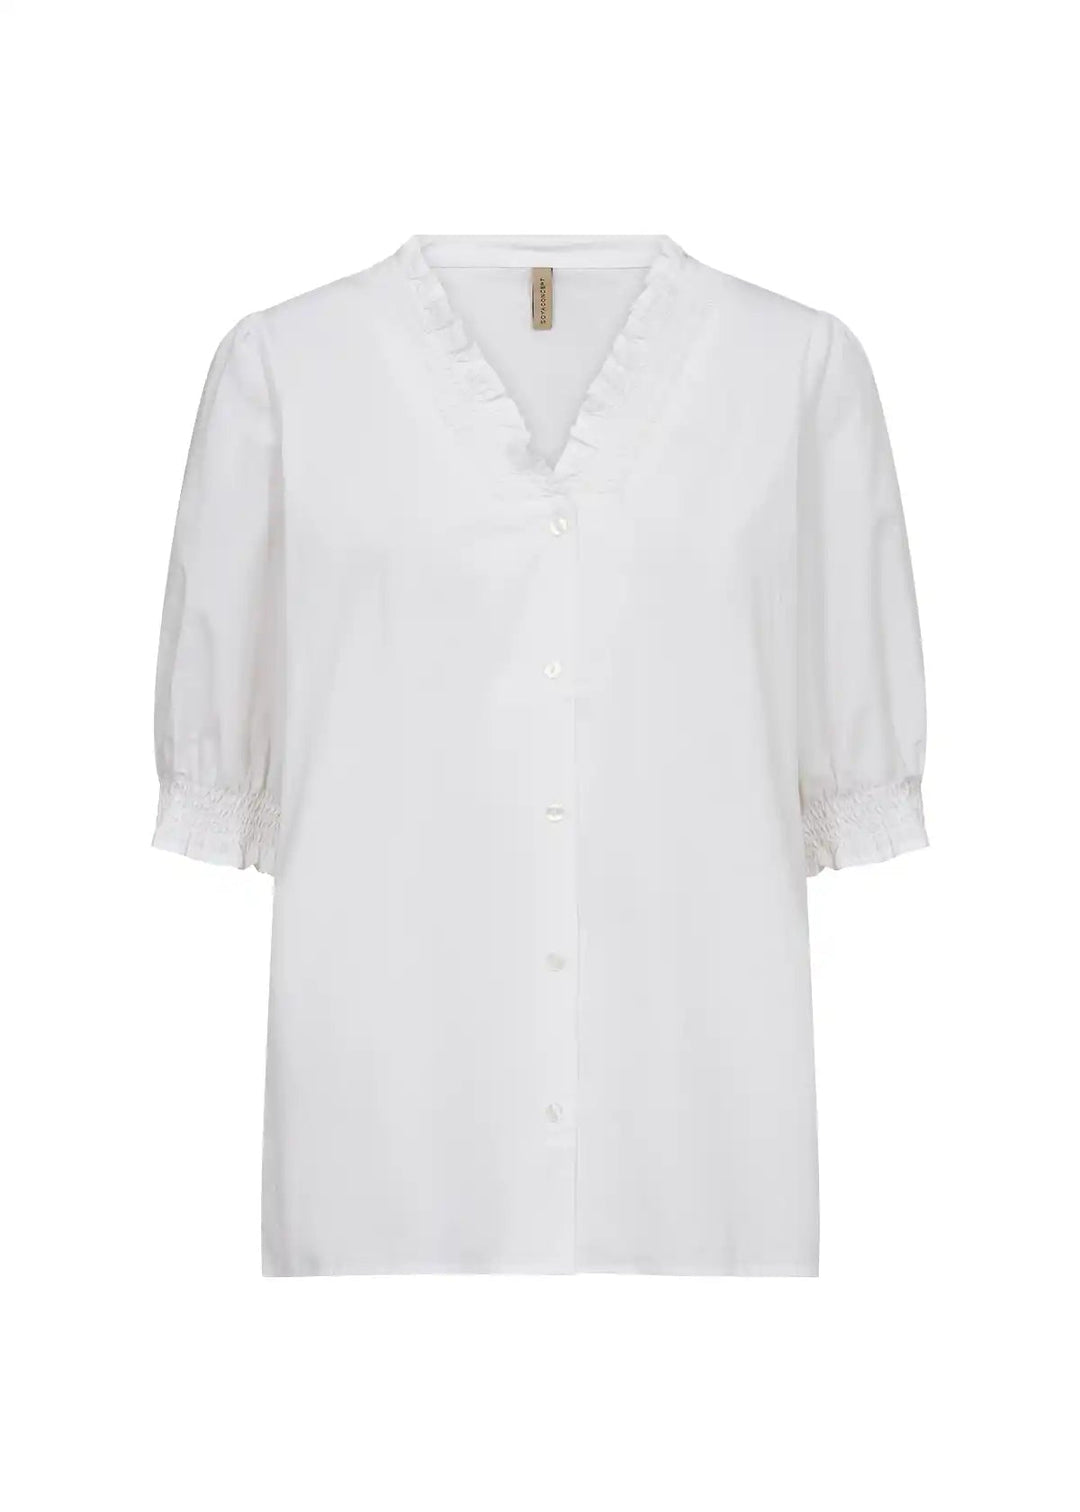 Sc-Milly 7 White | Skjorter og bluser | Smuk - Dameklær på nett